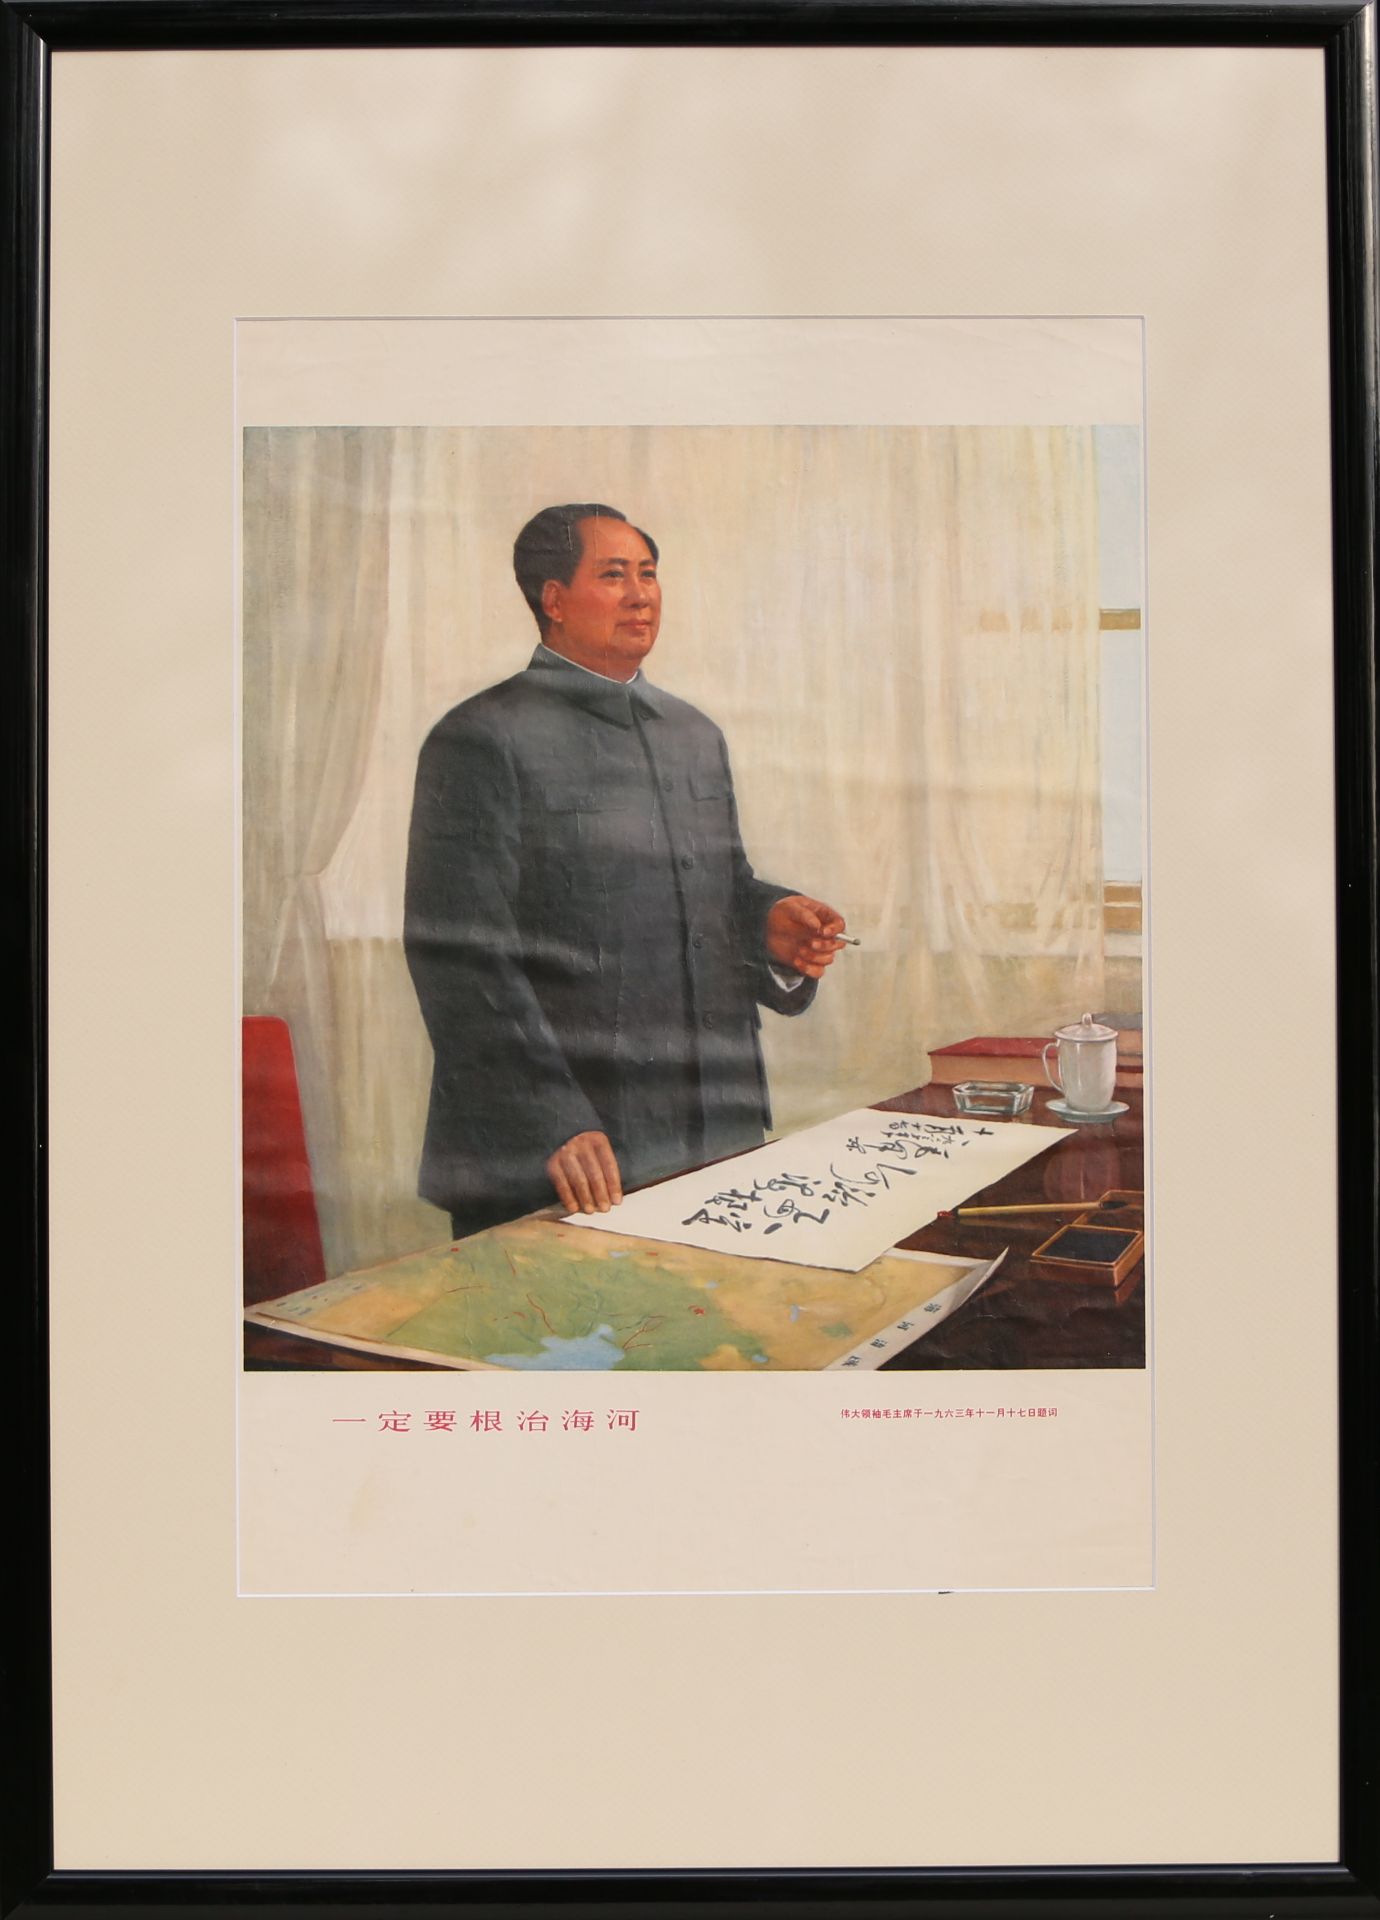 17 Affiches de propagande de la révolution culturelle chinoise Encadrée 75cm x 52cm - Image 17 of 17